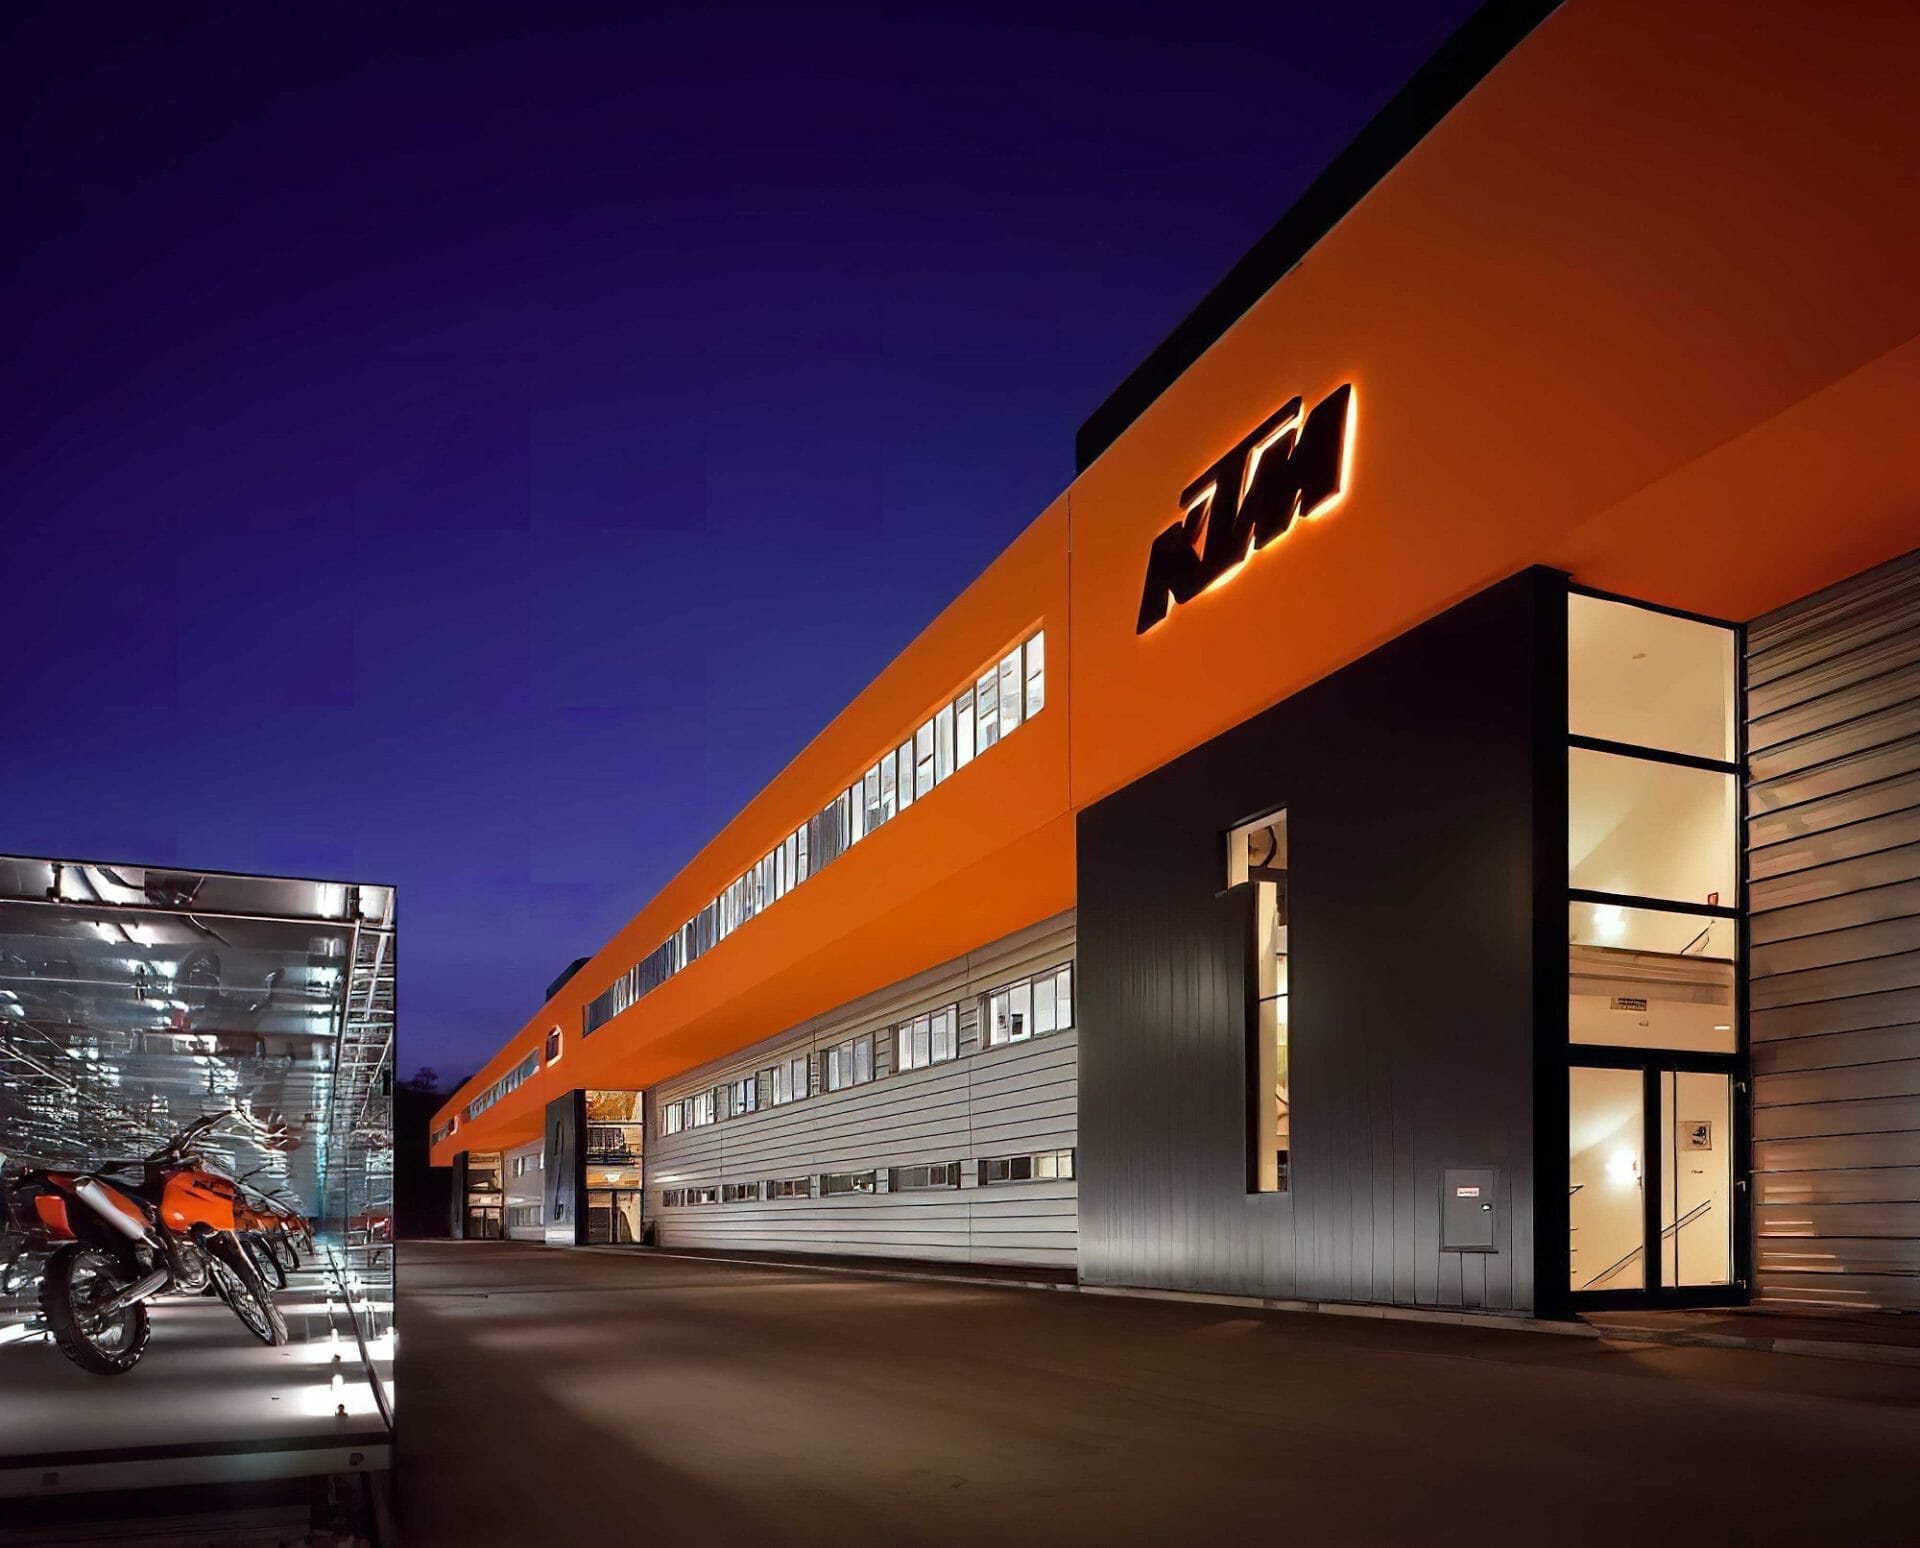 Stellenabbau bei Pierer Mobility: Umfassende Veränderungen im KTM-Werk in Mattighofen